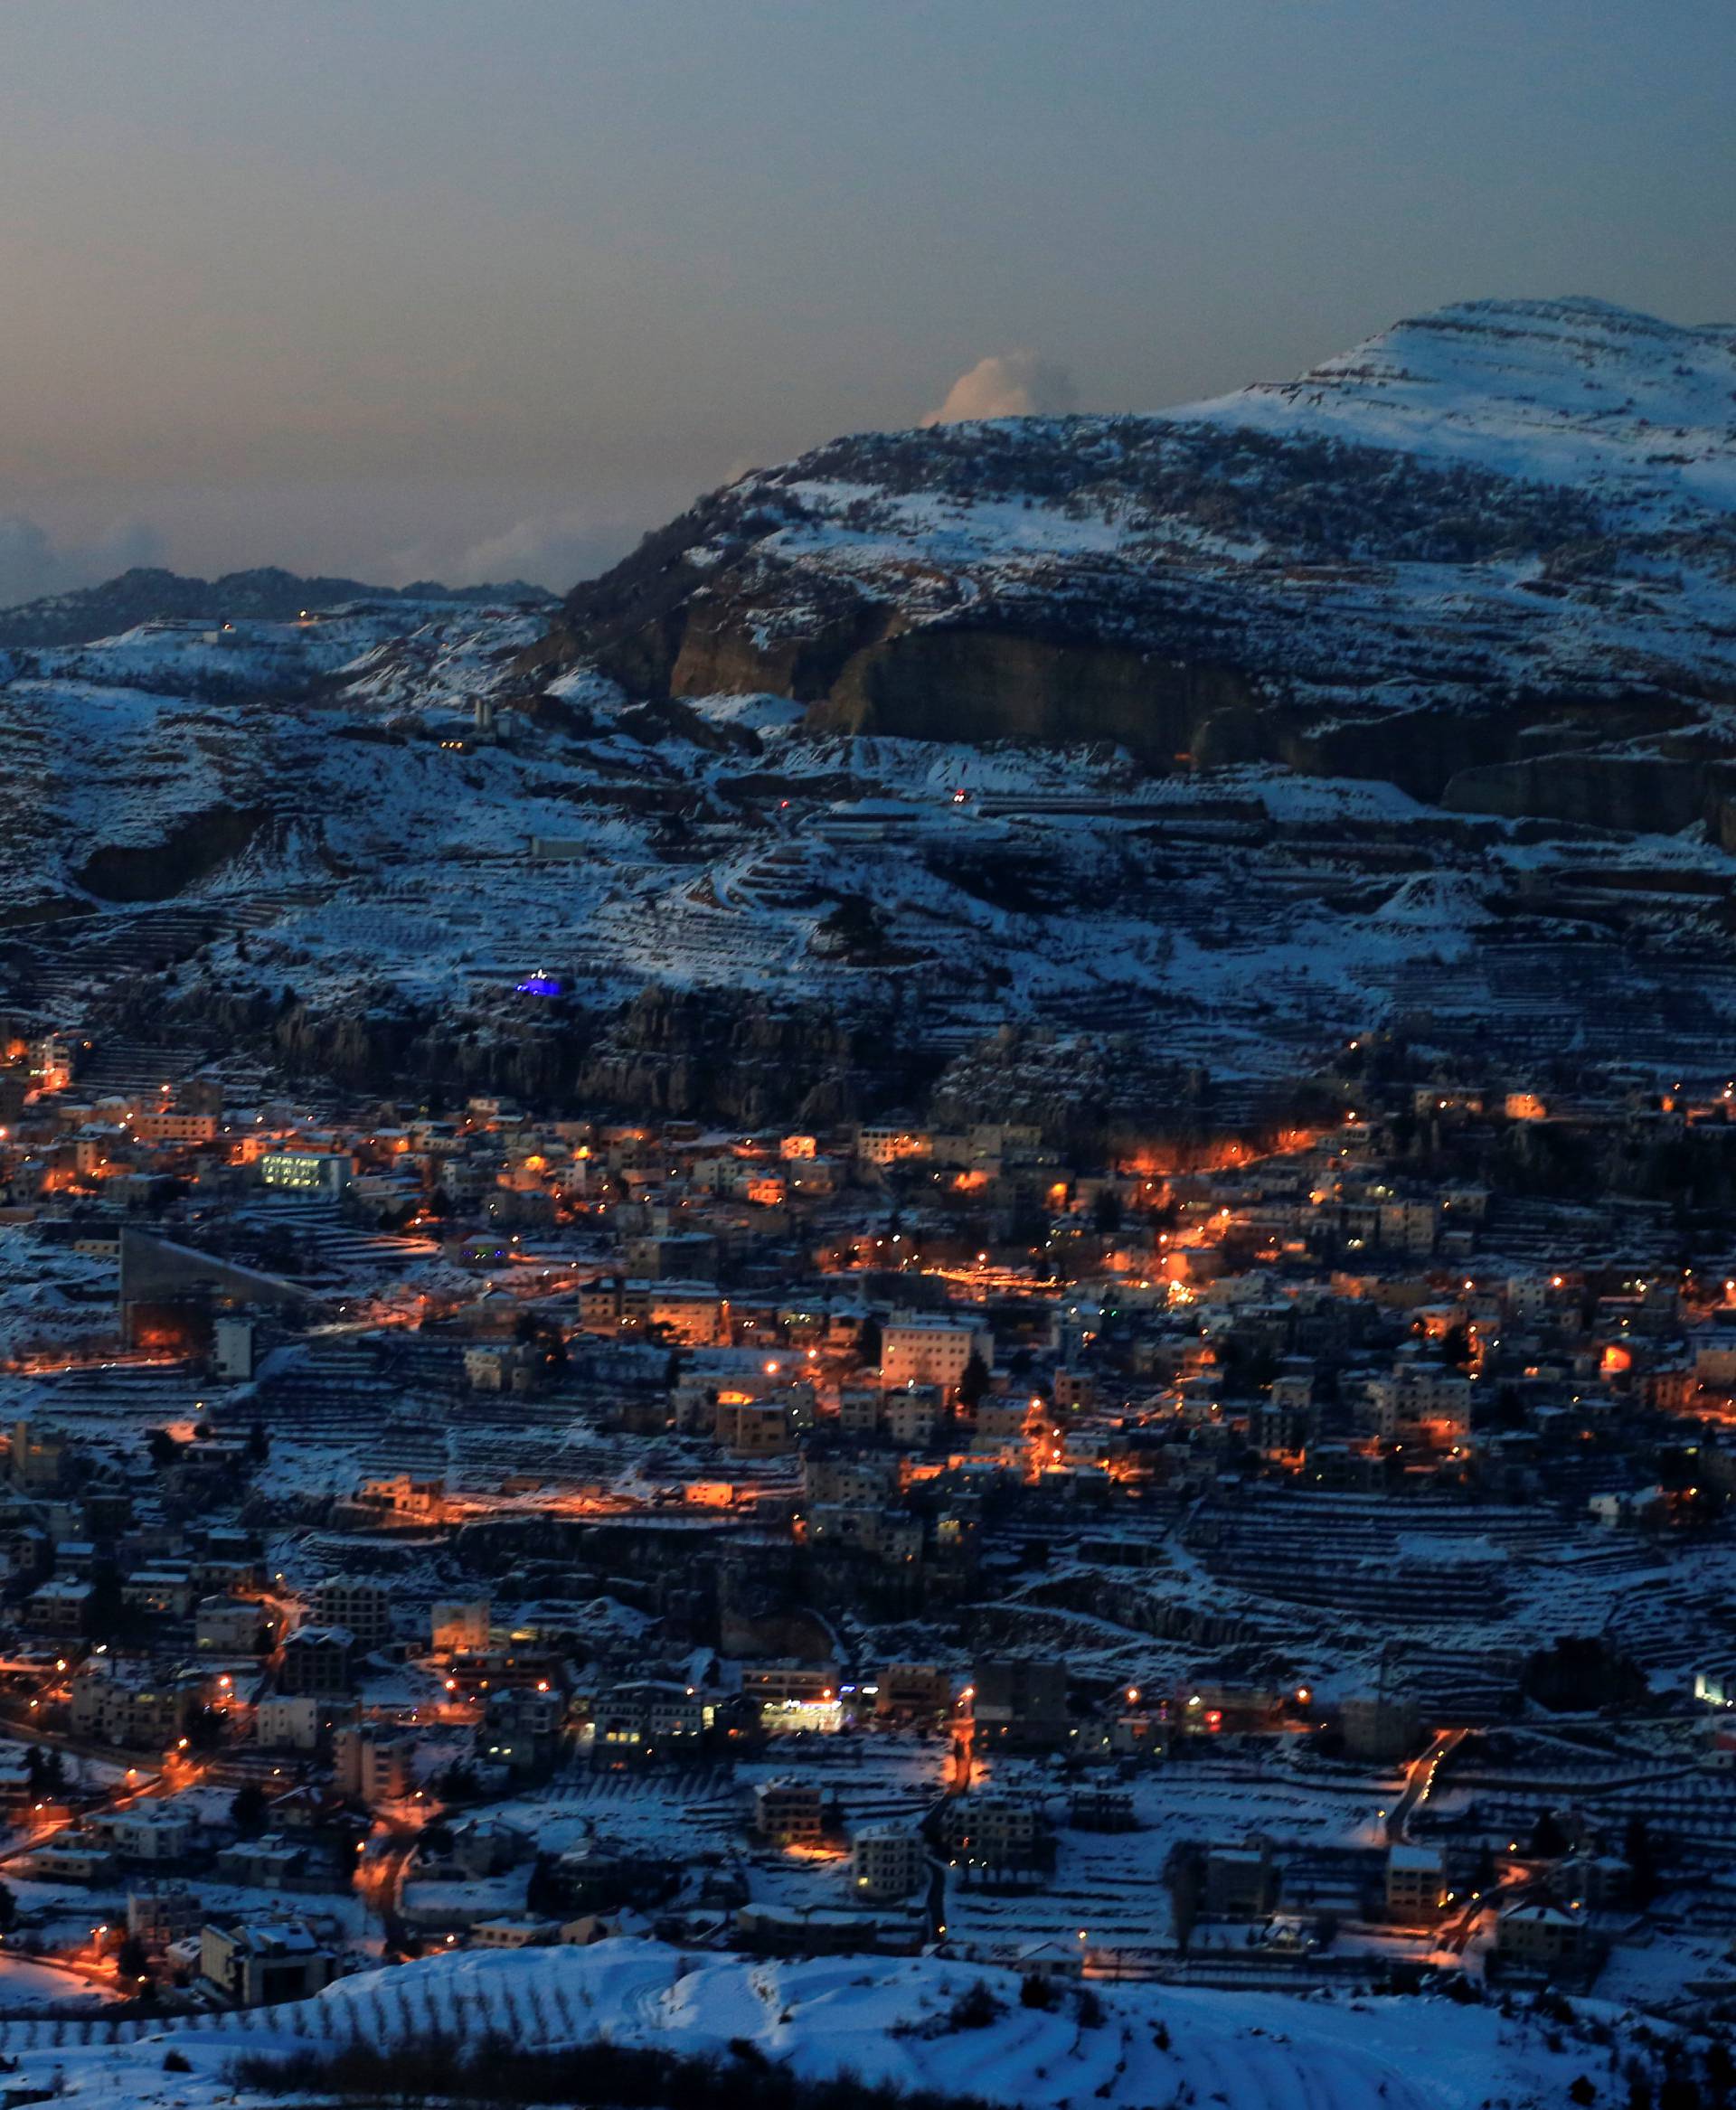 Snow covers Faraya village on Mount Lebanon